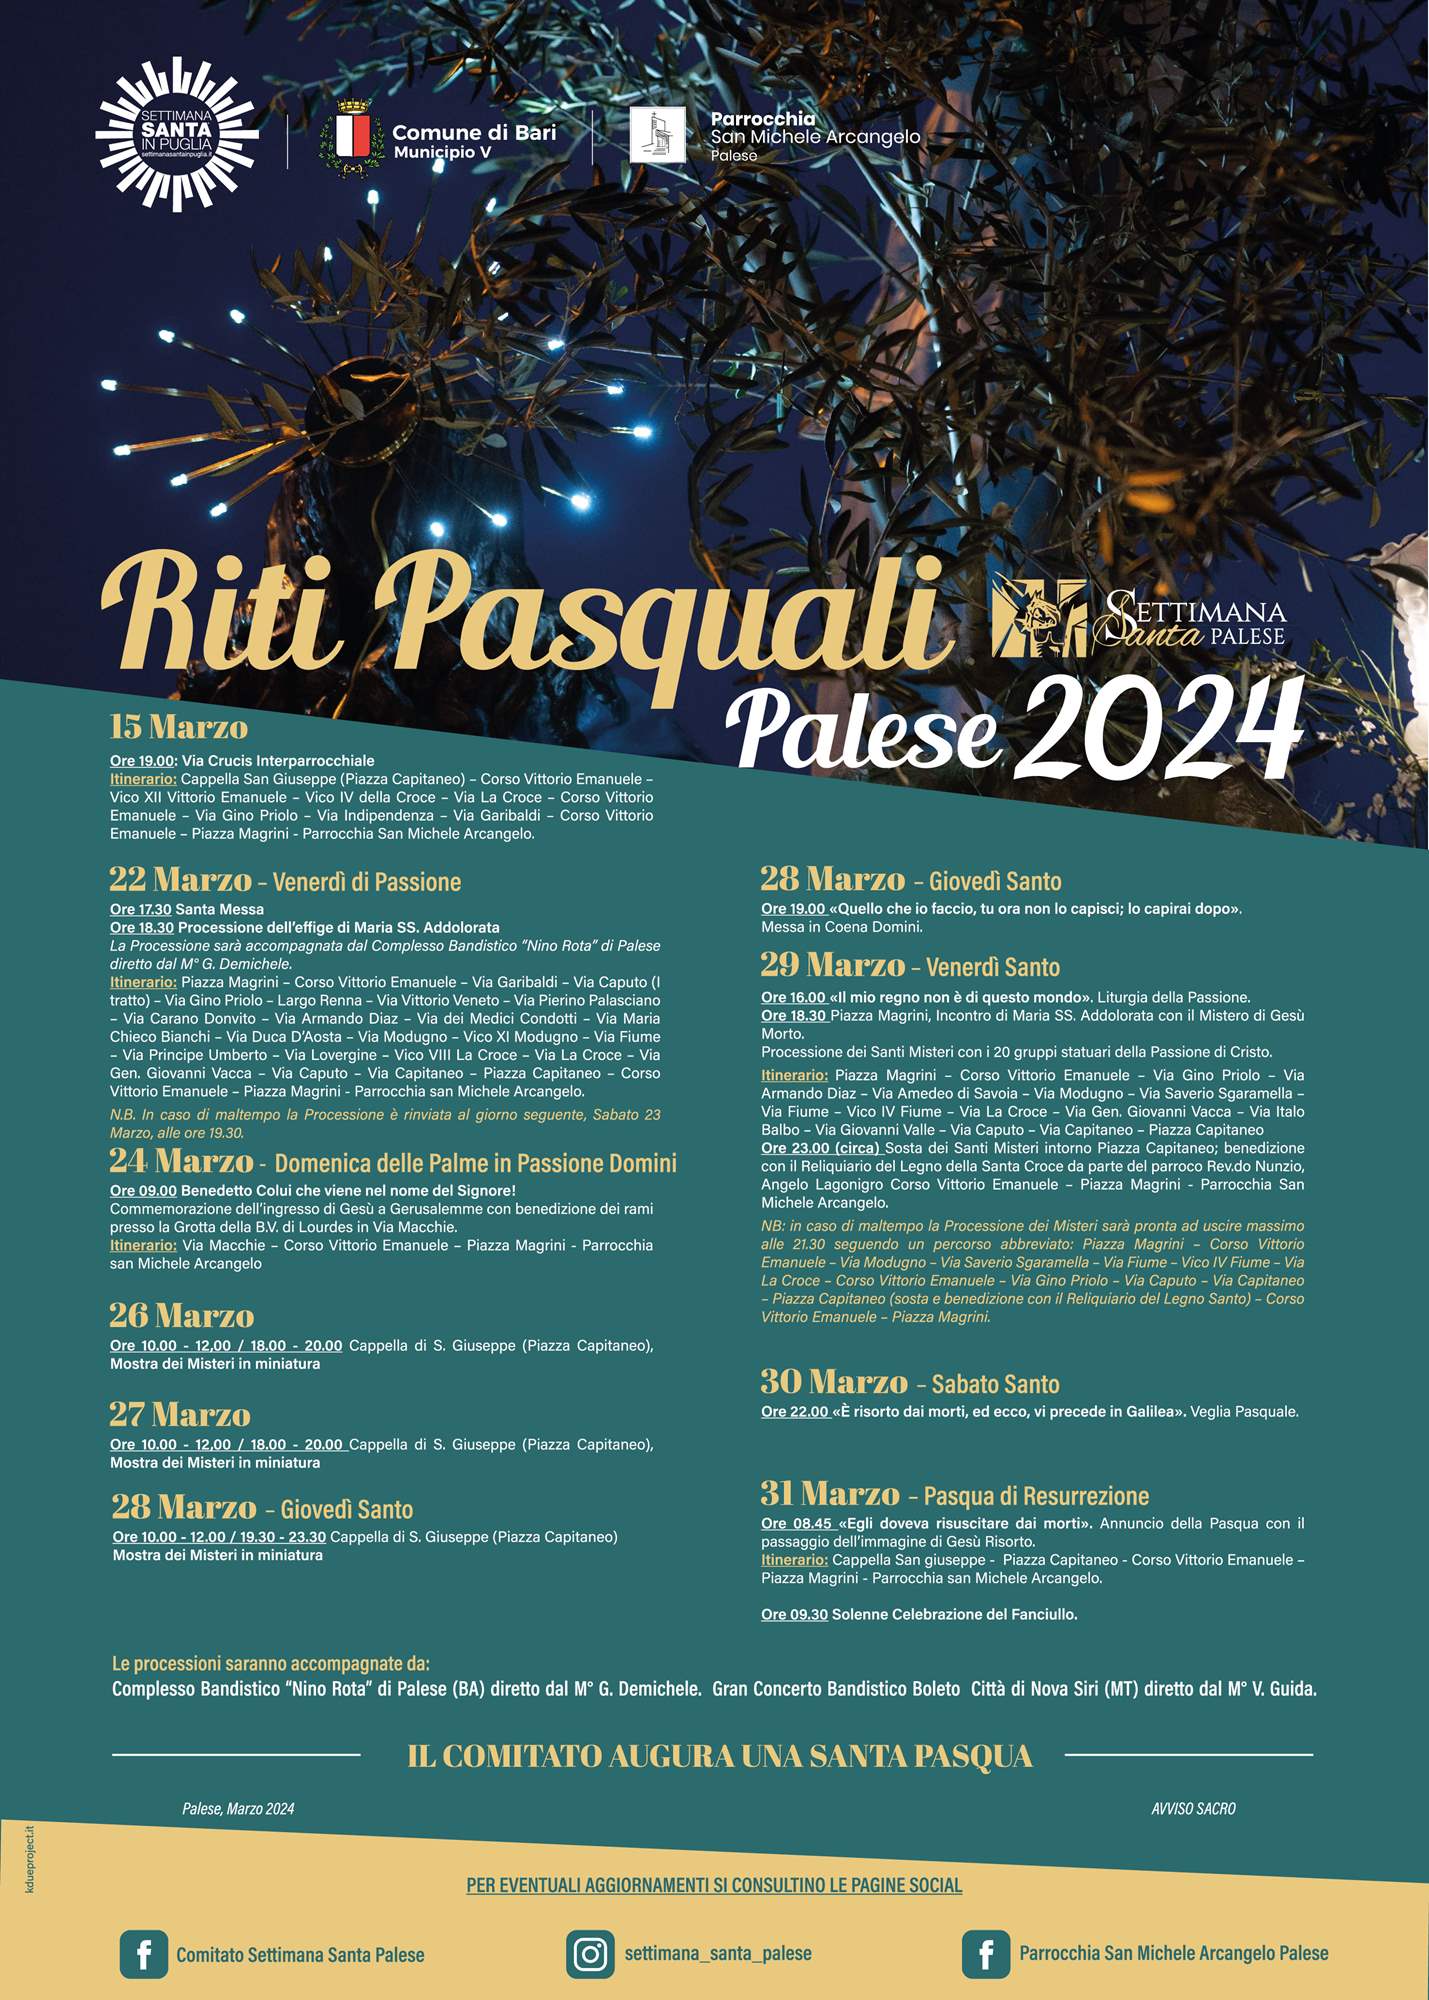 Riti Pasquali - Palese 2024